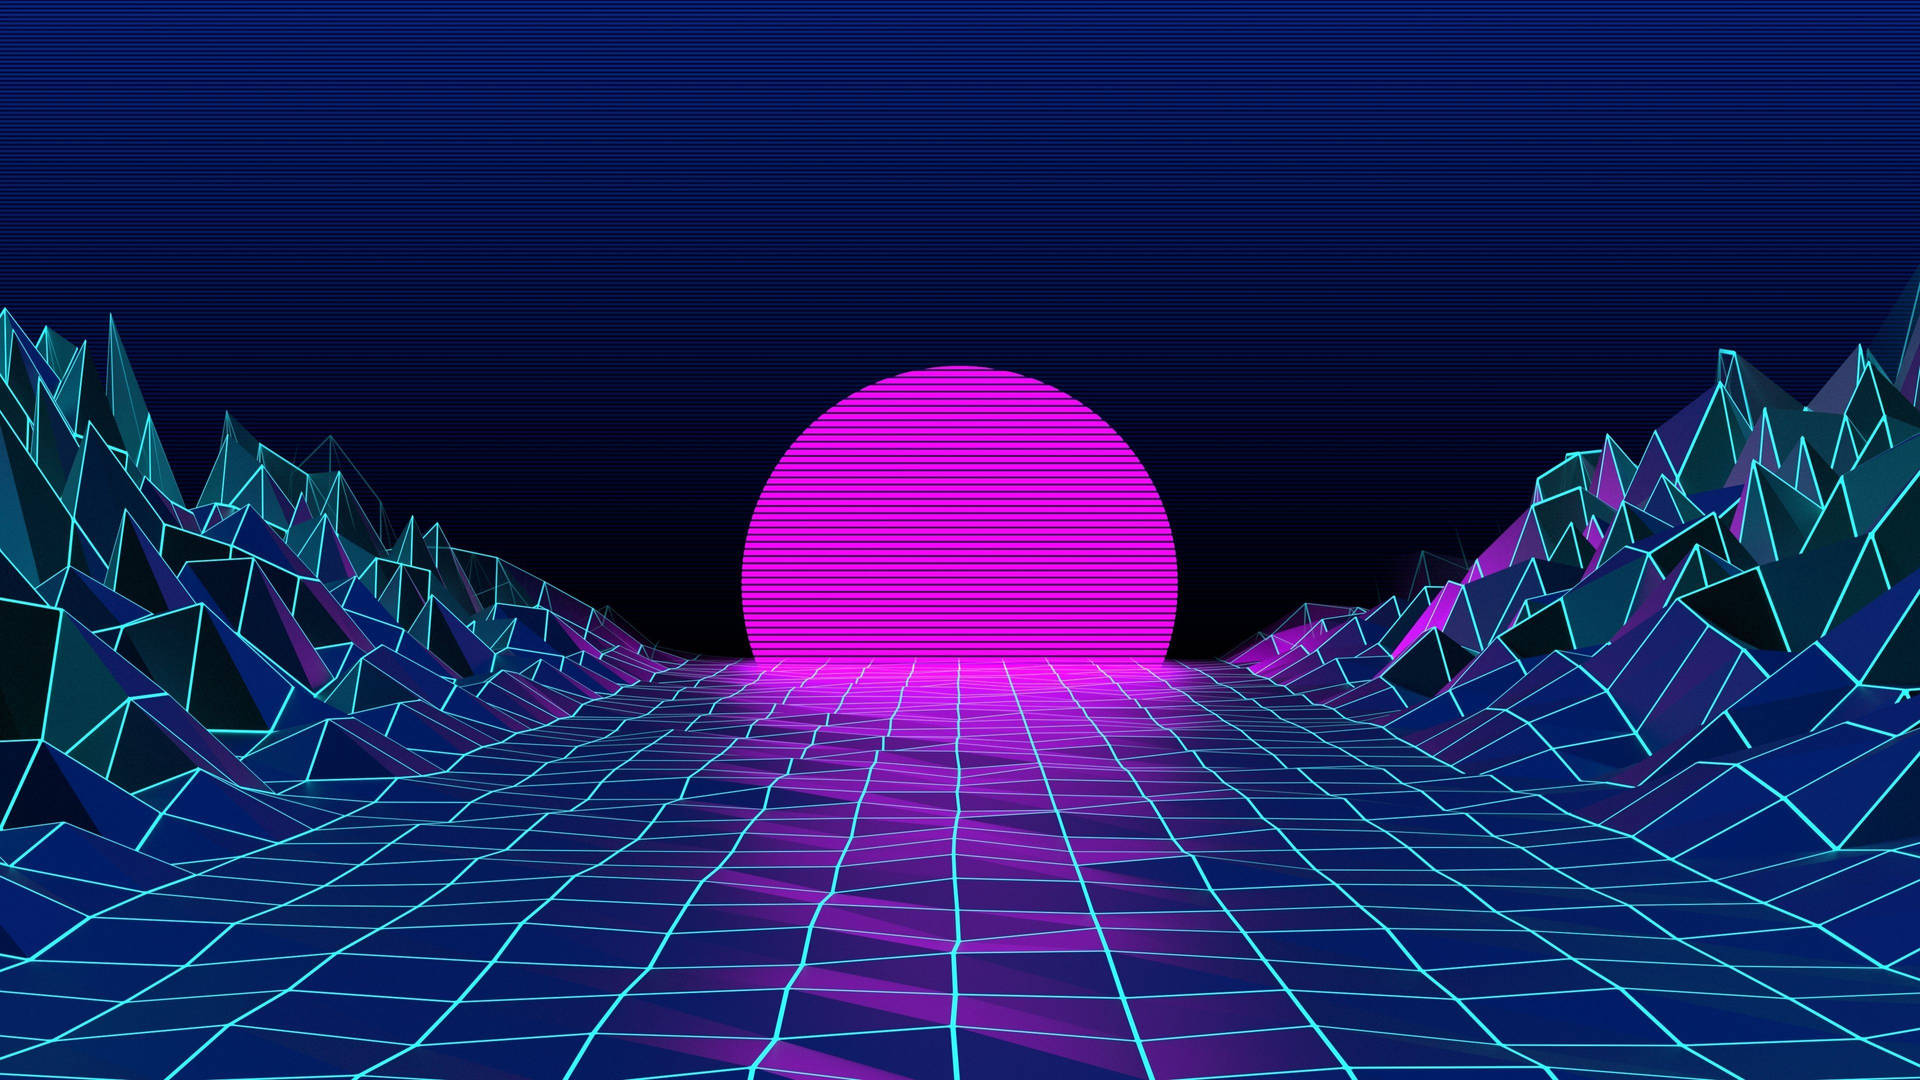 Retro Vaporwave Violet Moon Background